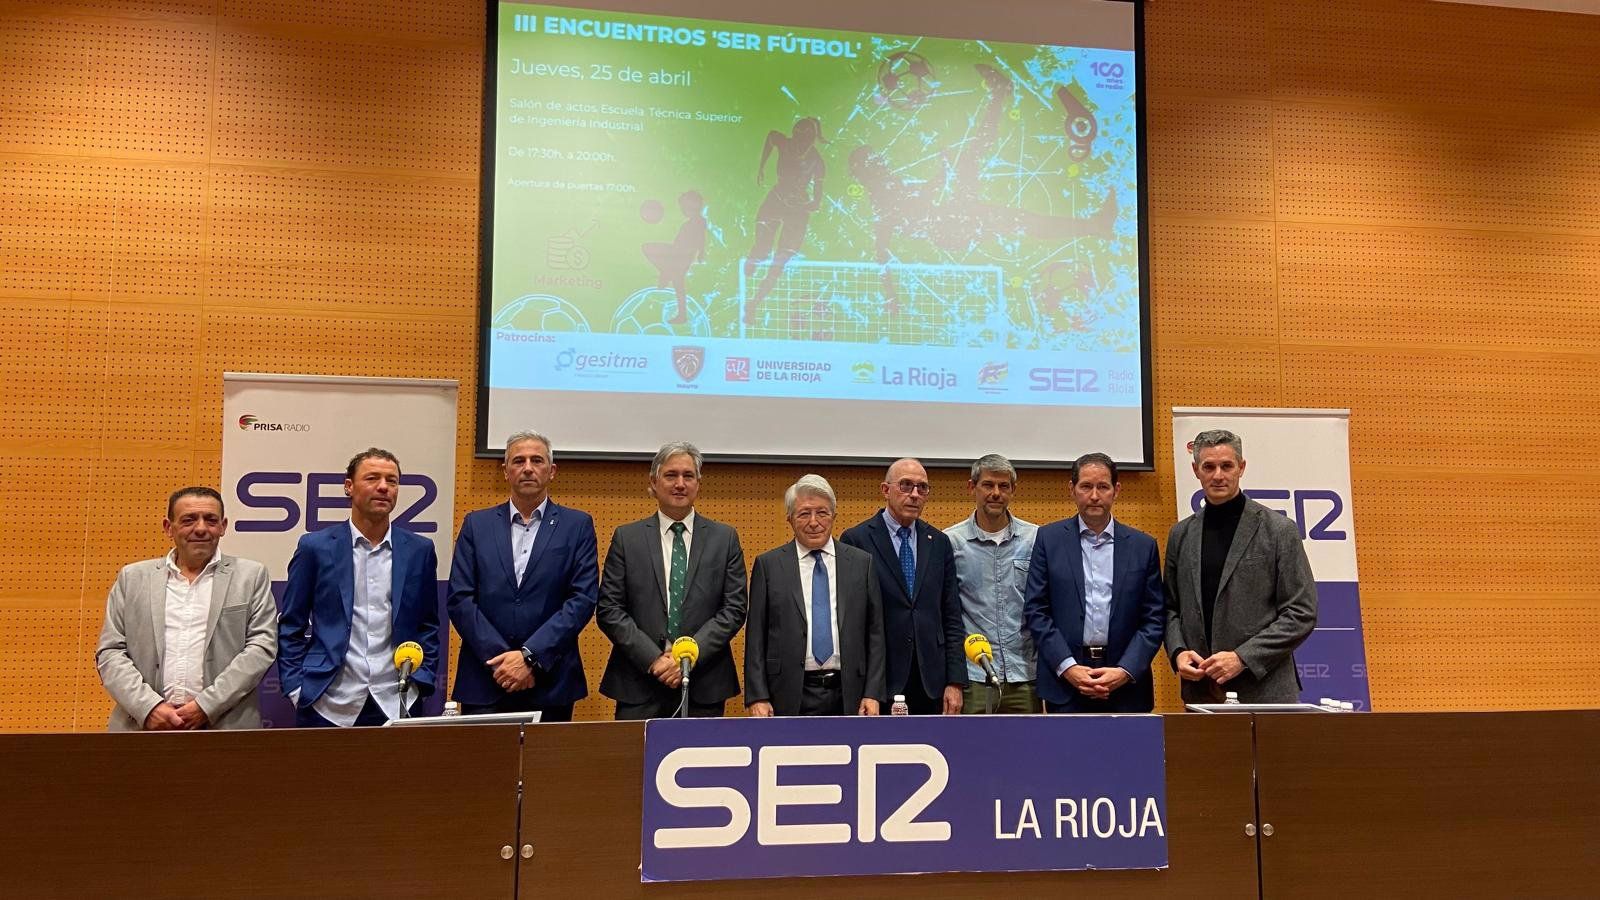 Enrique Cerezo reclama renovación en la Federación Española de Fútbol